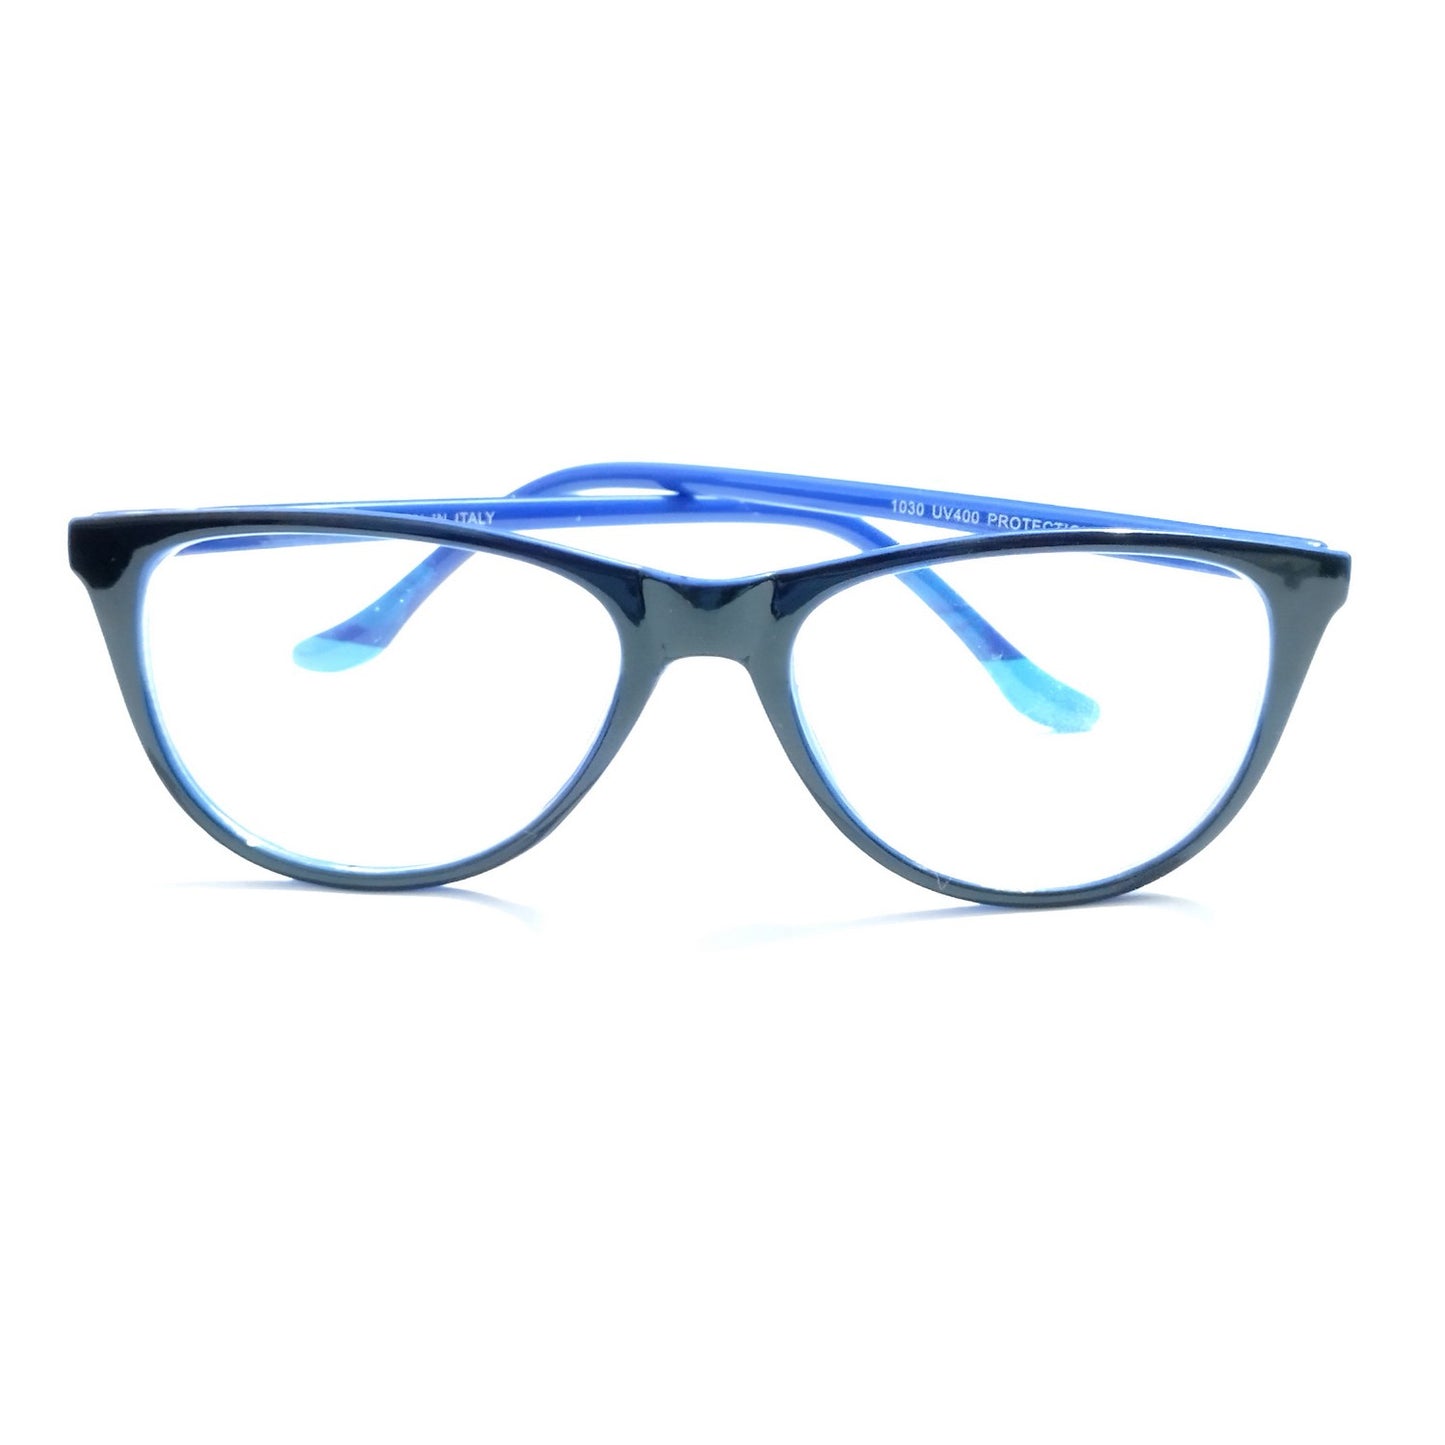 Black Front Blue Side Cat Eye Glasses for Women